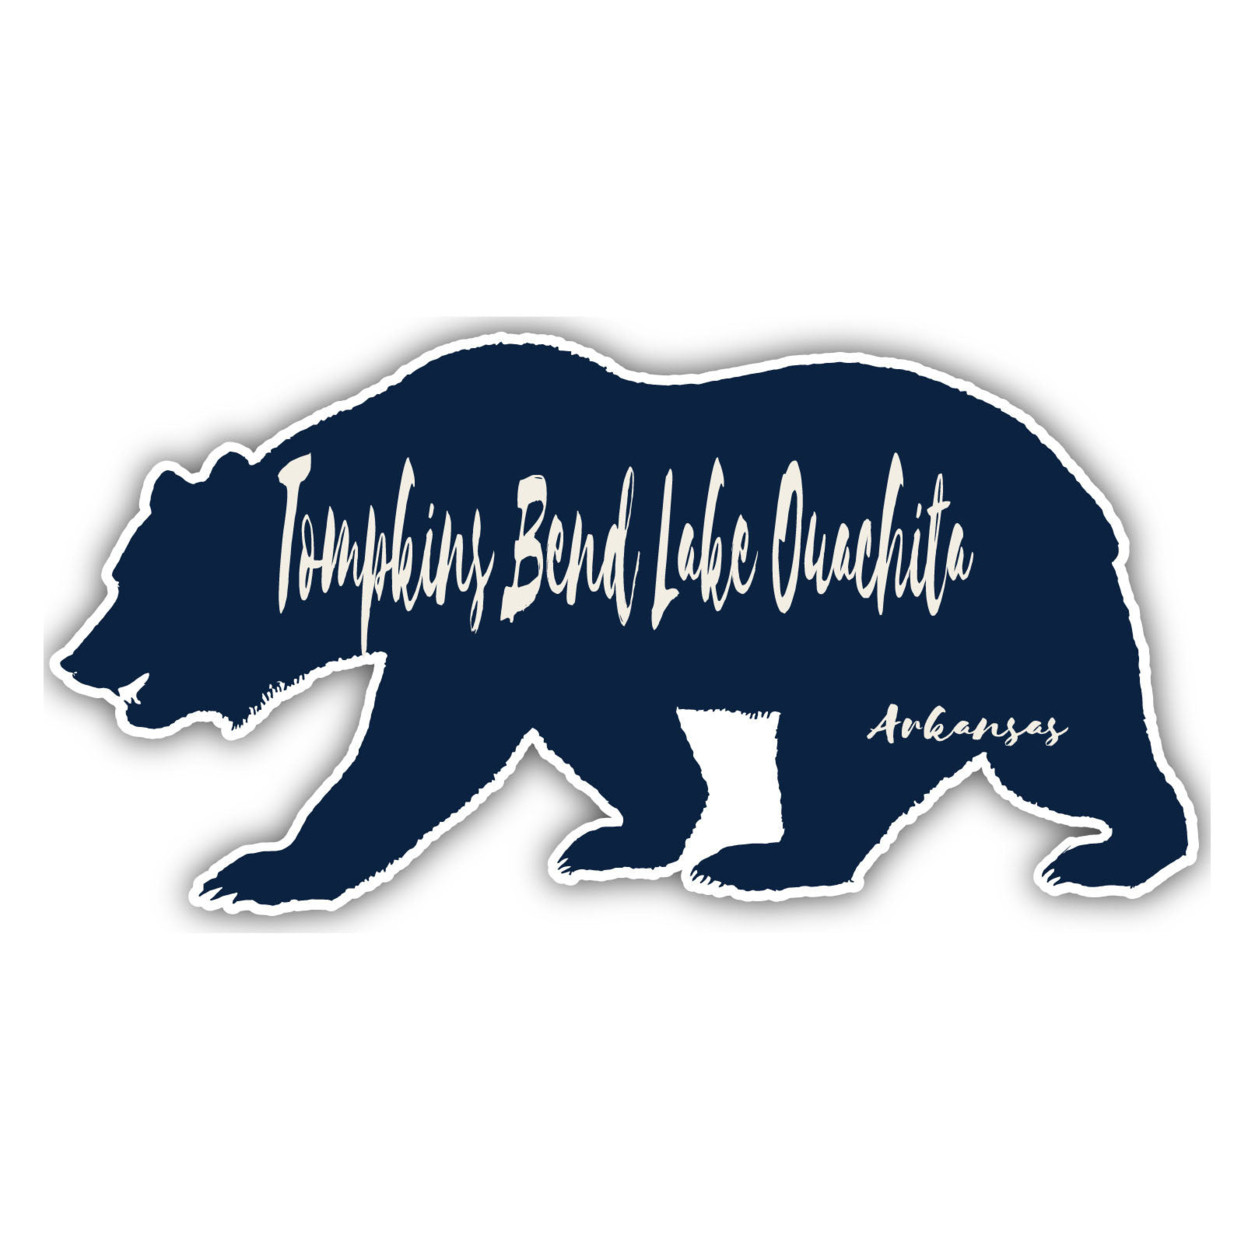 Tompkins Bend Lake Ouachita Arkansas Souvenir Decorative Stickers (Choose Theme And Size) - Single Unit, 4-Inch, Bear